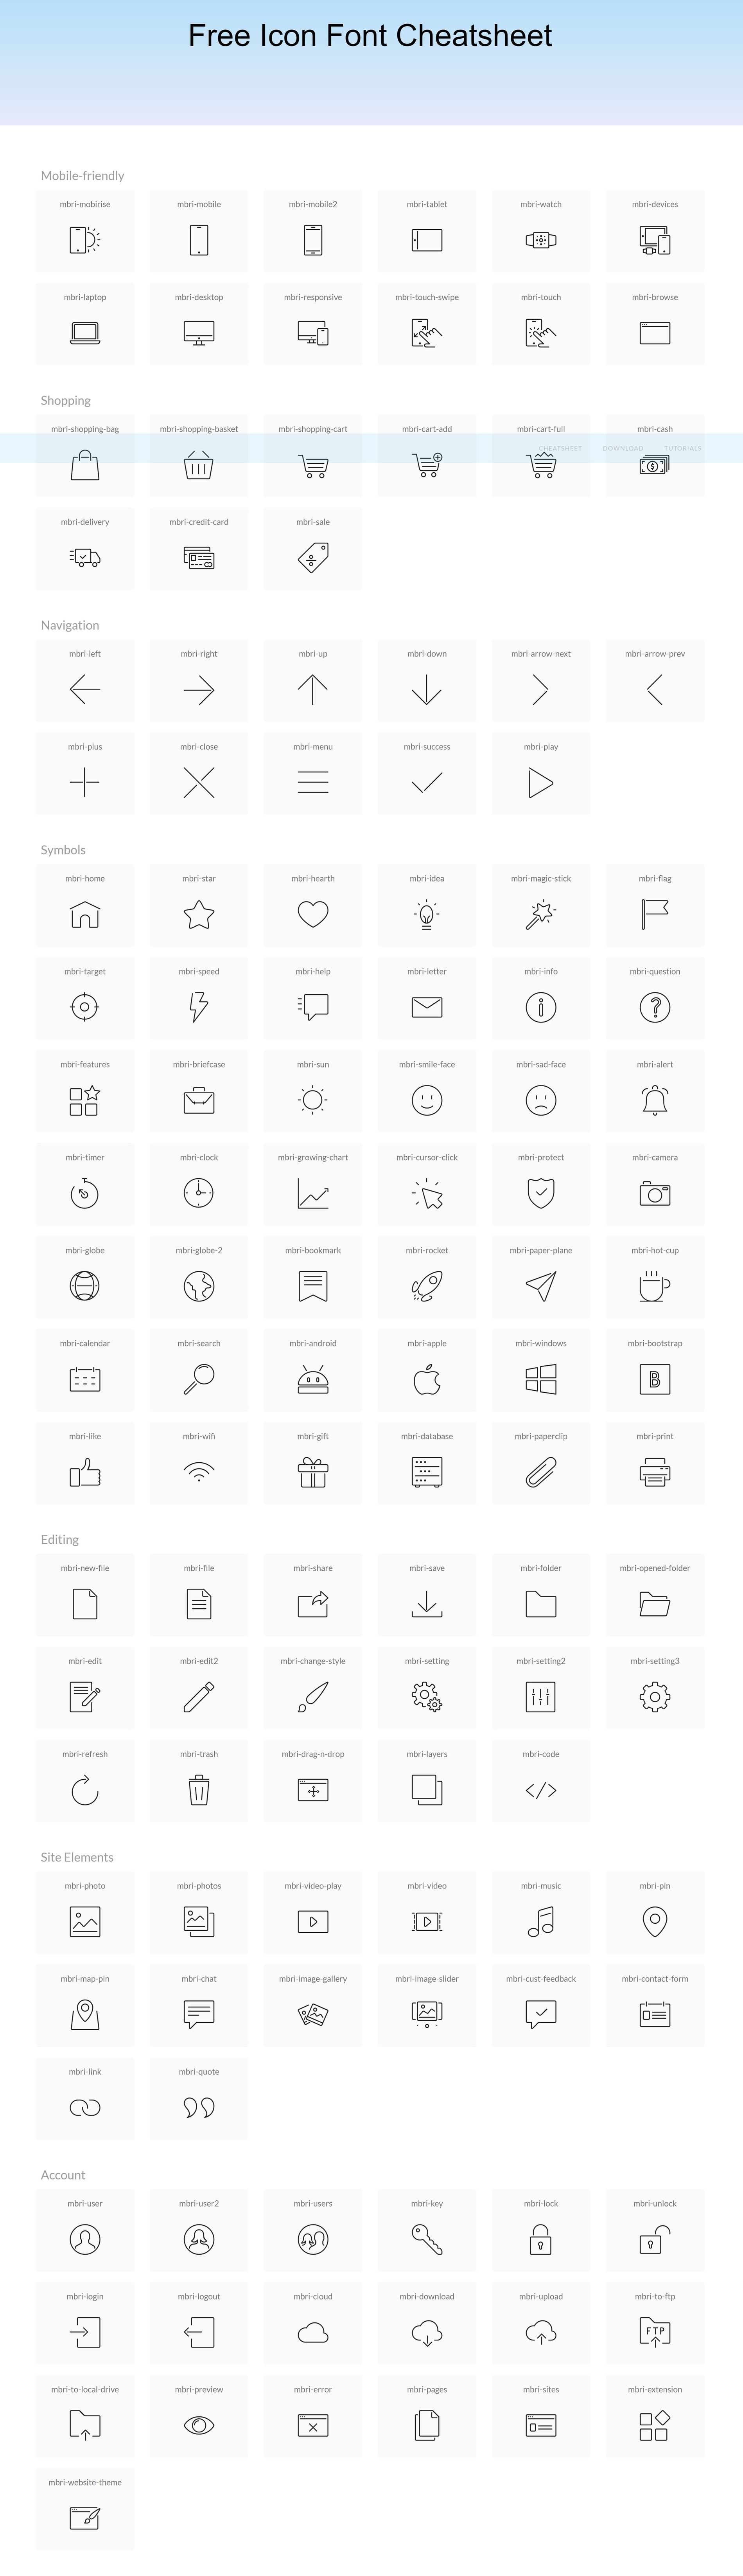 Create Symbol Fonts